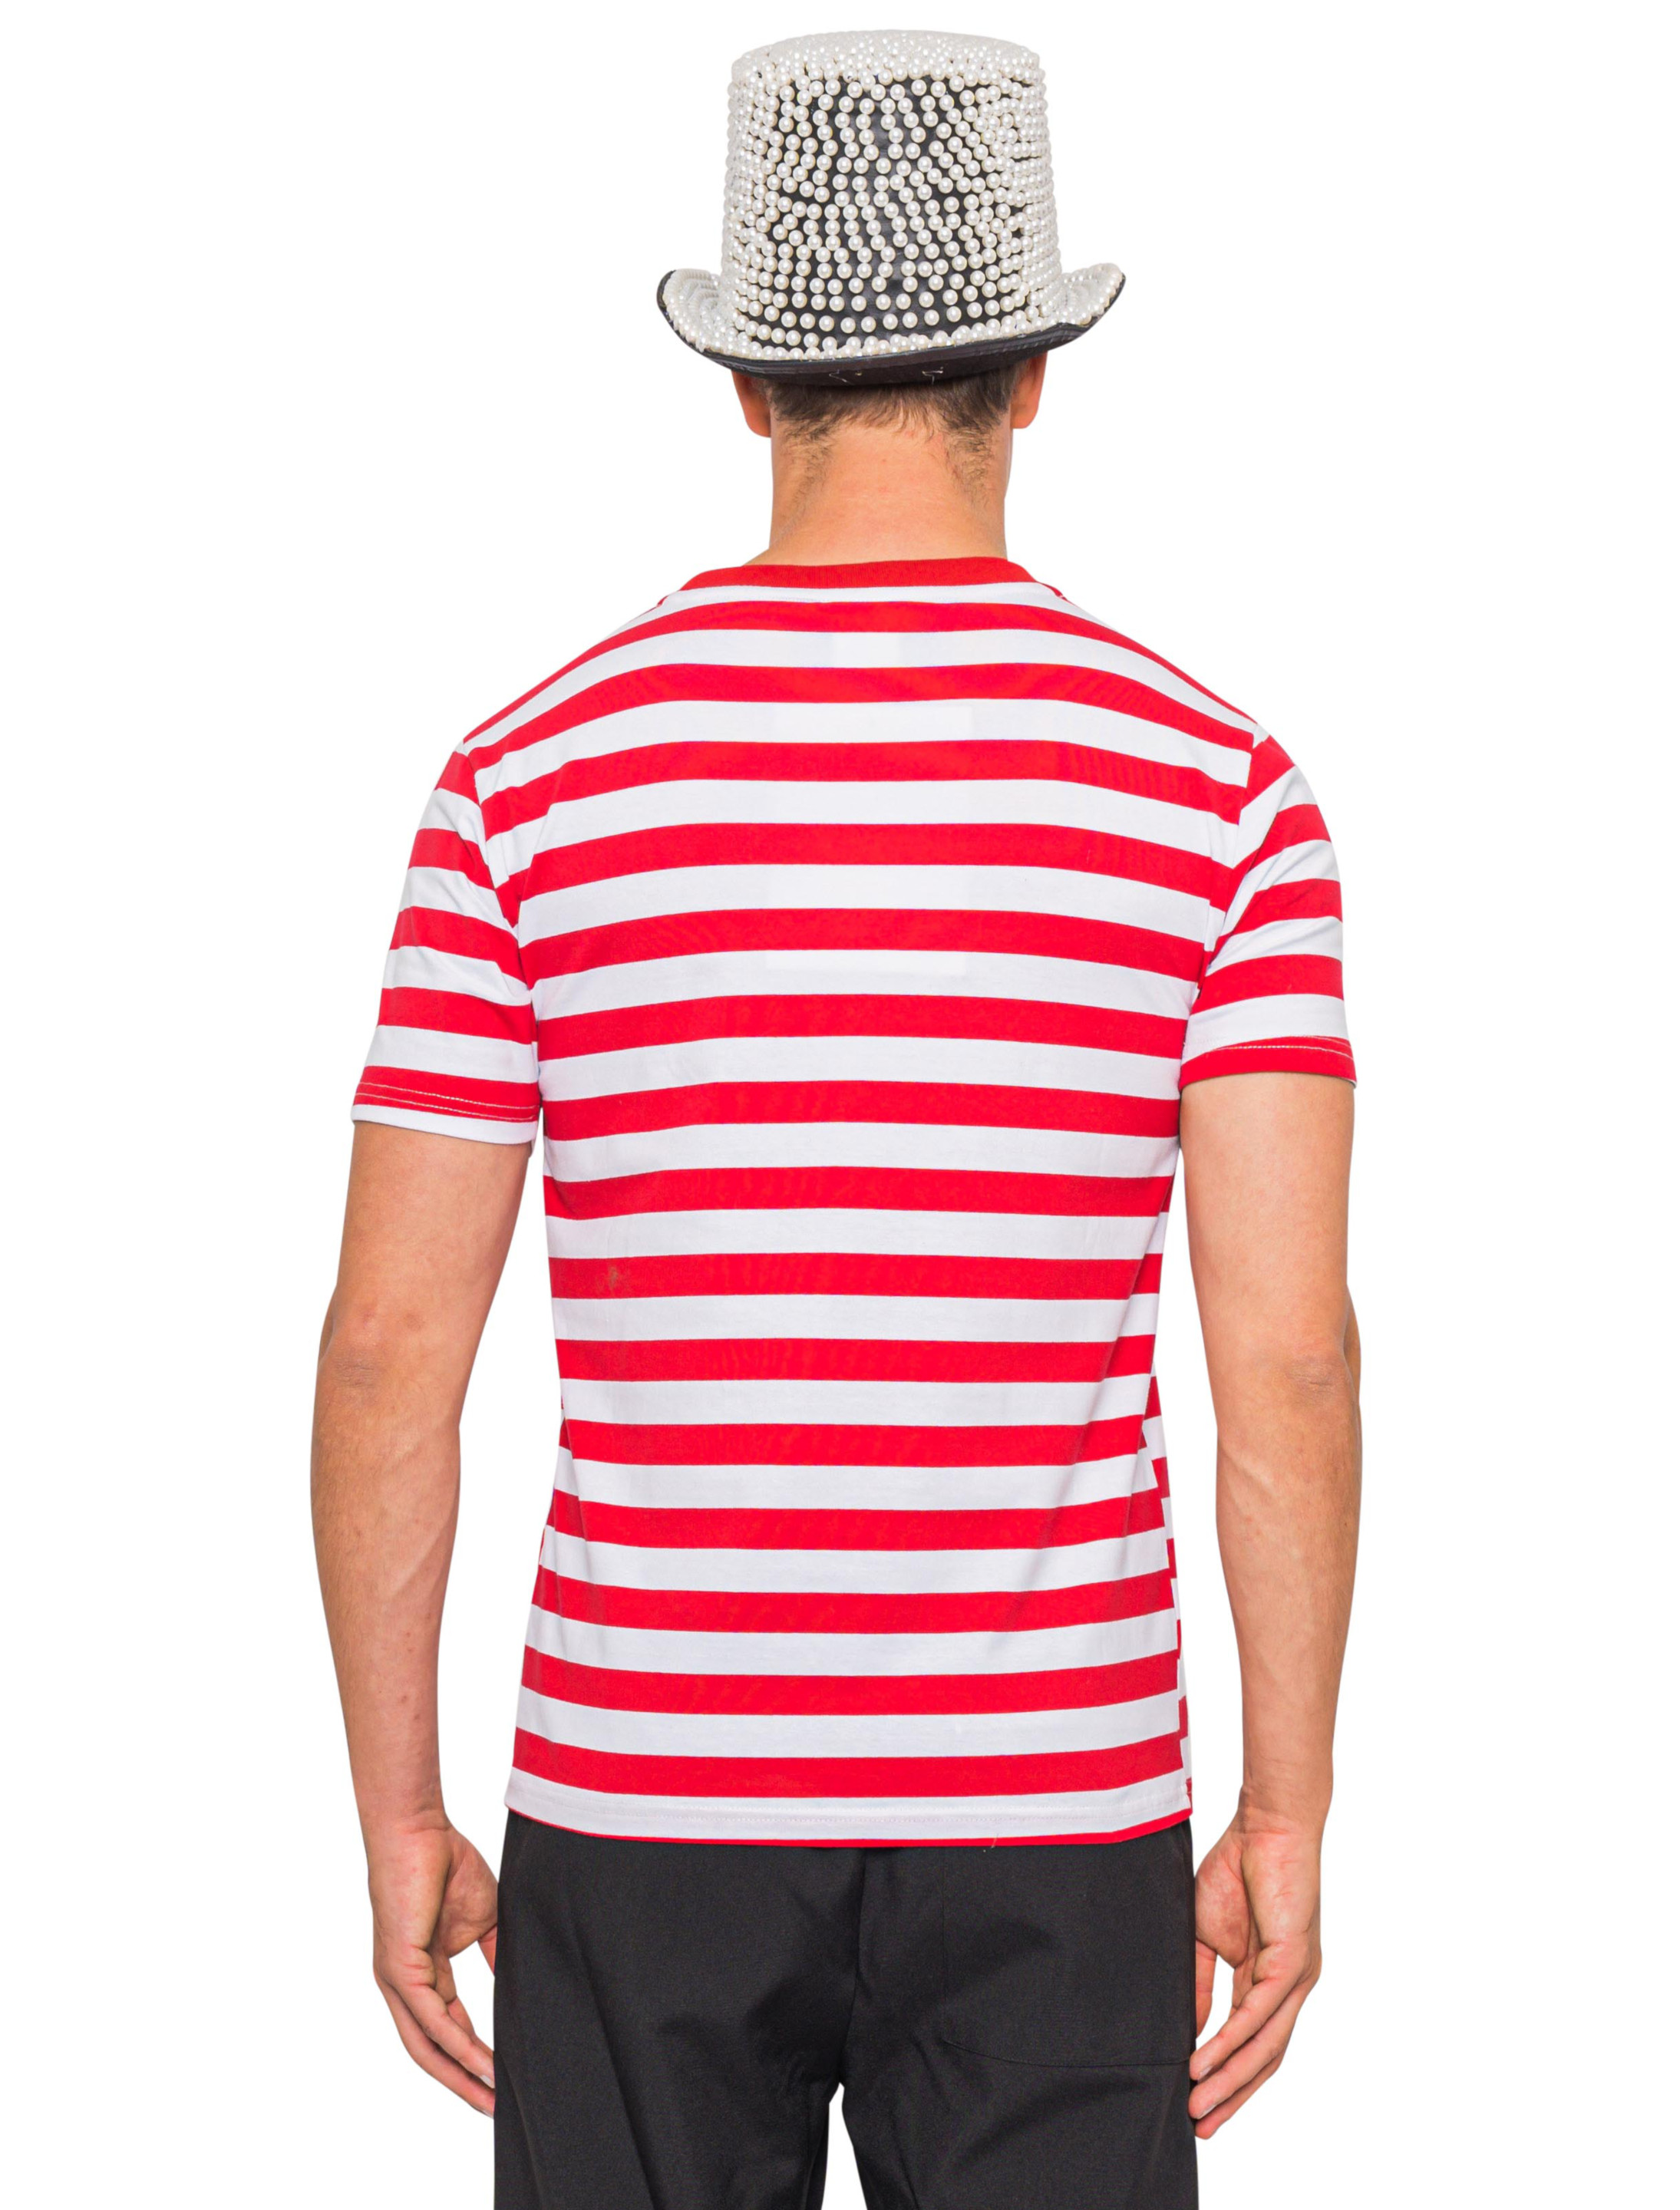 T-Shirt mit Dom Herren rot/weiß 3XL